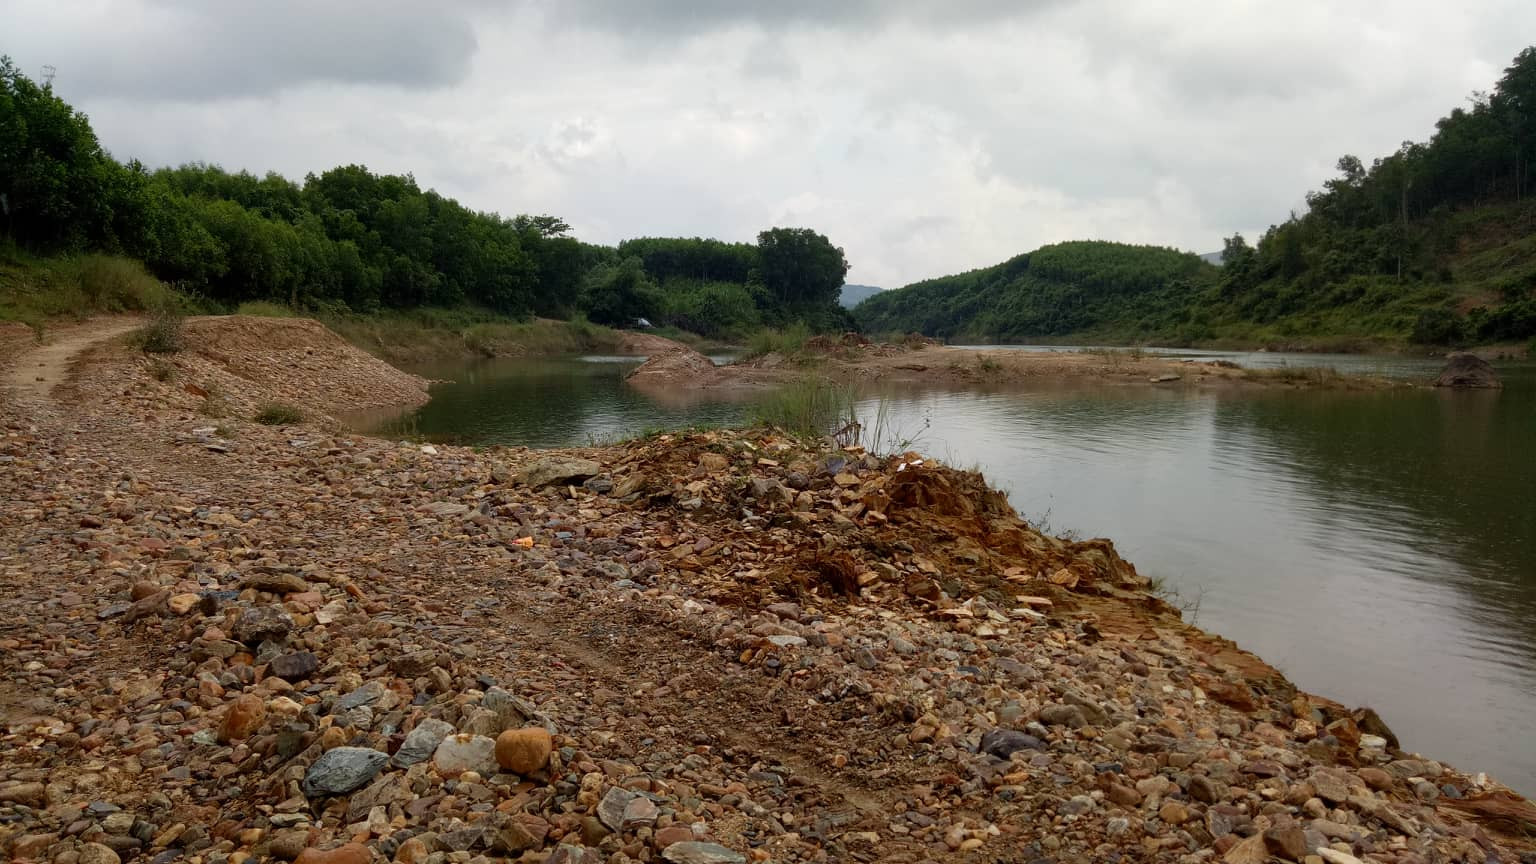 Một khu vực đã bị lấy cát chỉ còn lại hố nước sâu tại bờ sông Tiên. Ảnh: HOÀI AN